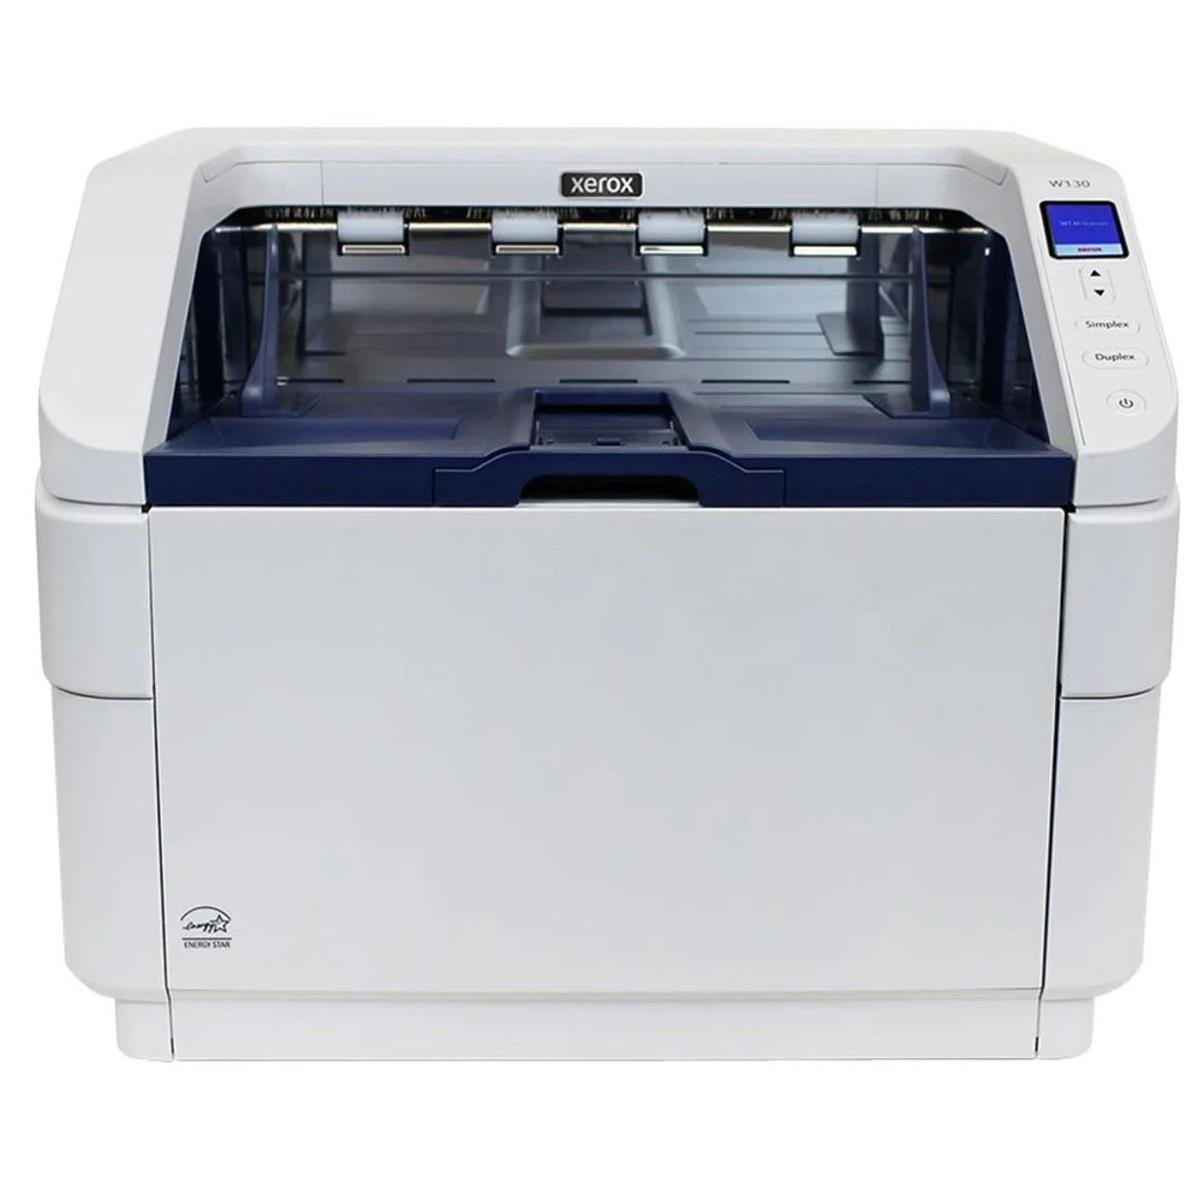 Производственный сканер Xerox W130 #XW130-A